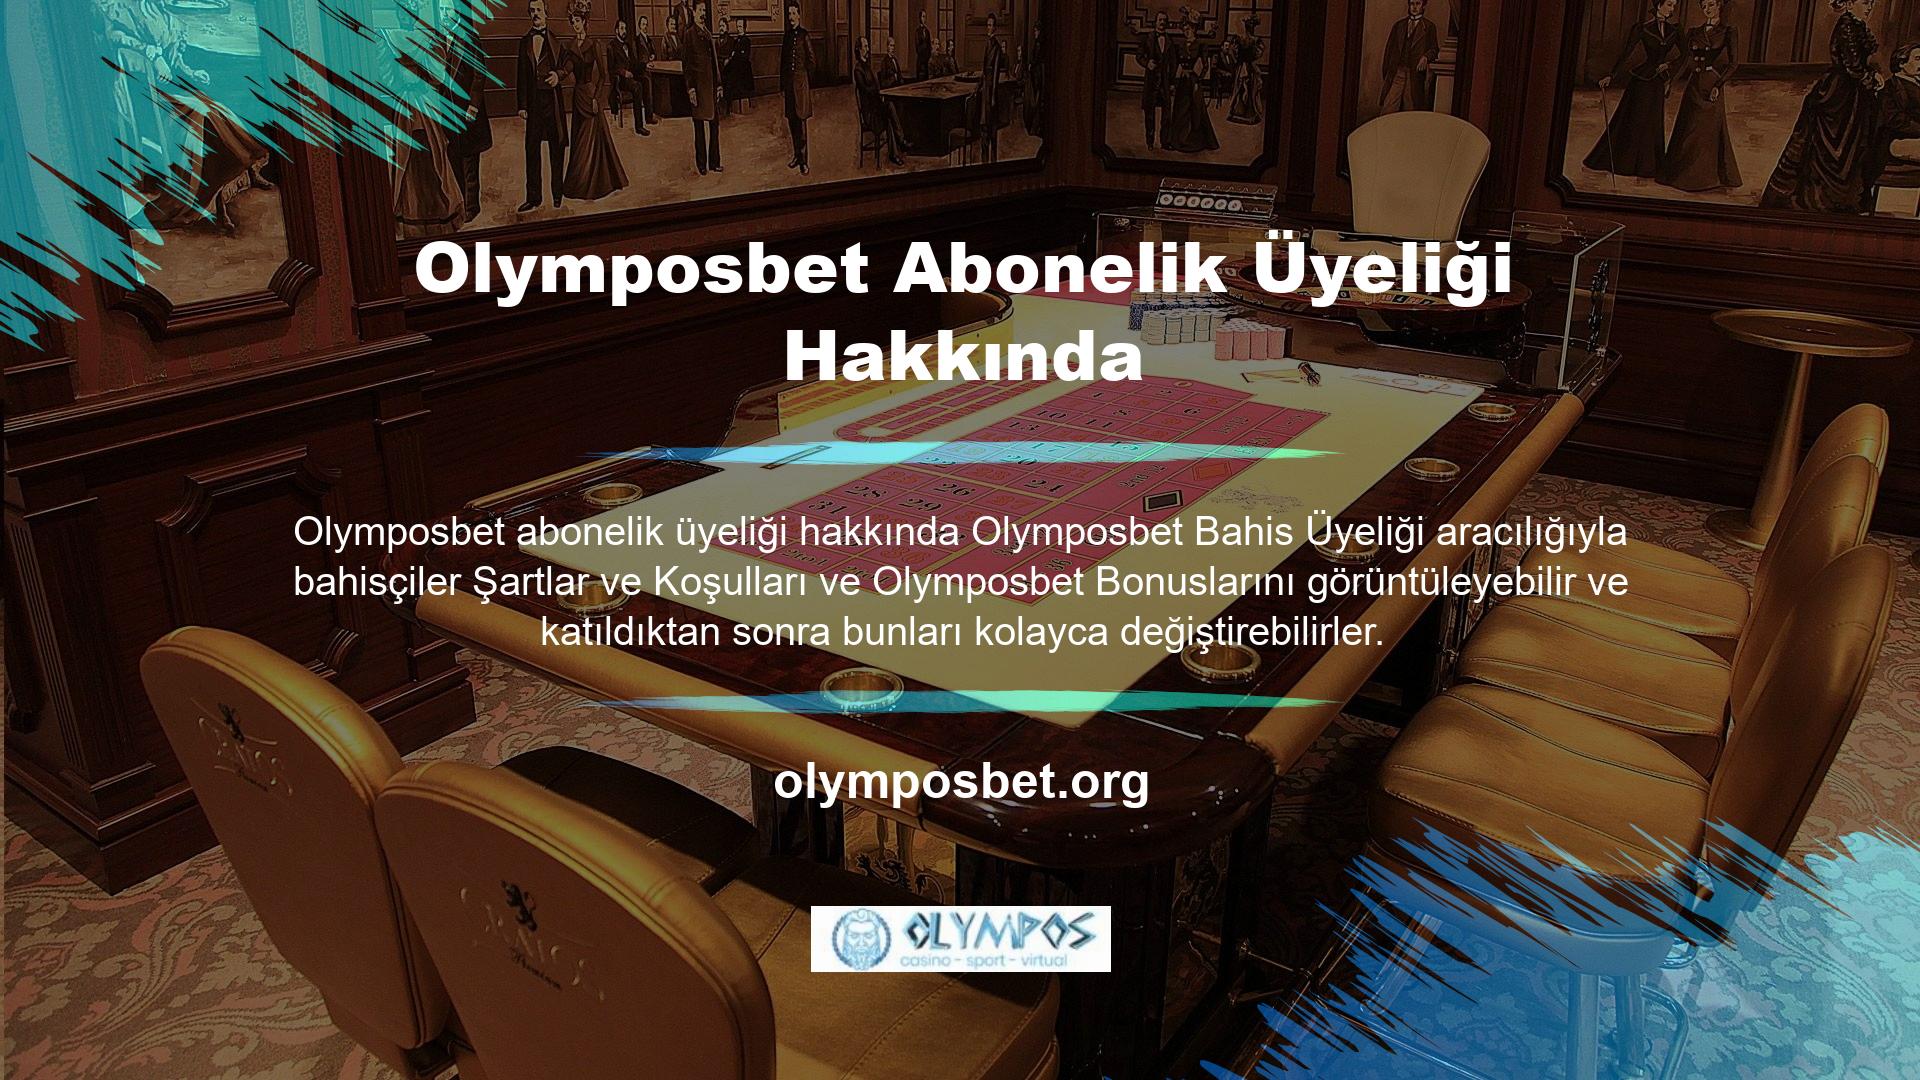 Olymposbet bunun bilincinde olup mevcut adresi üzerinden kullanıcılarına çeşitli bonuslar ve promosyonlar sunmaktadır